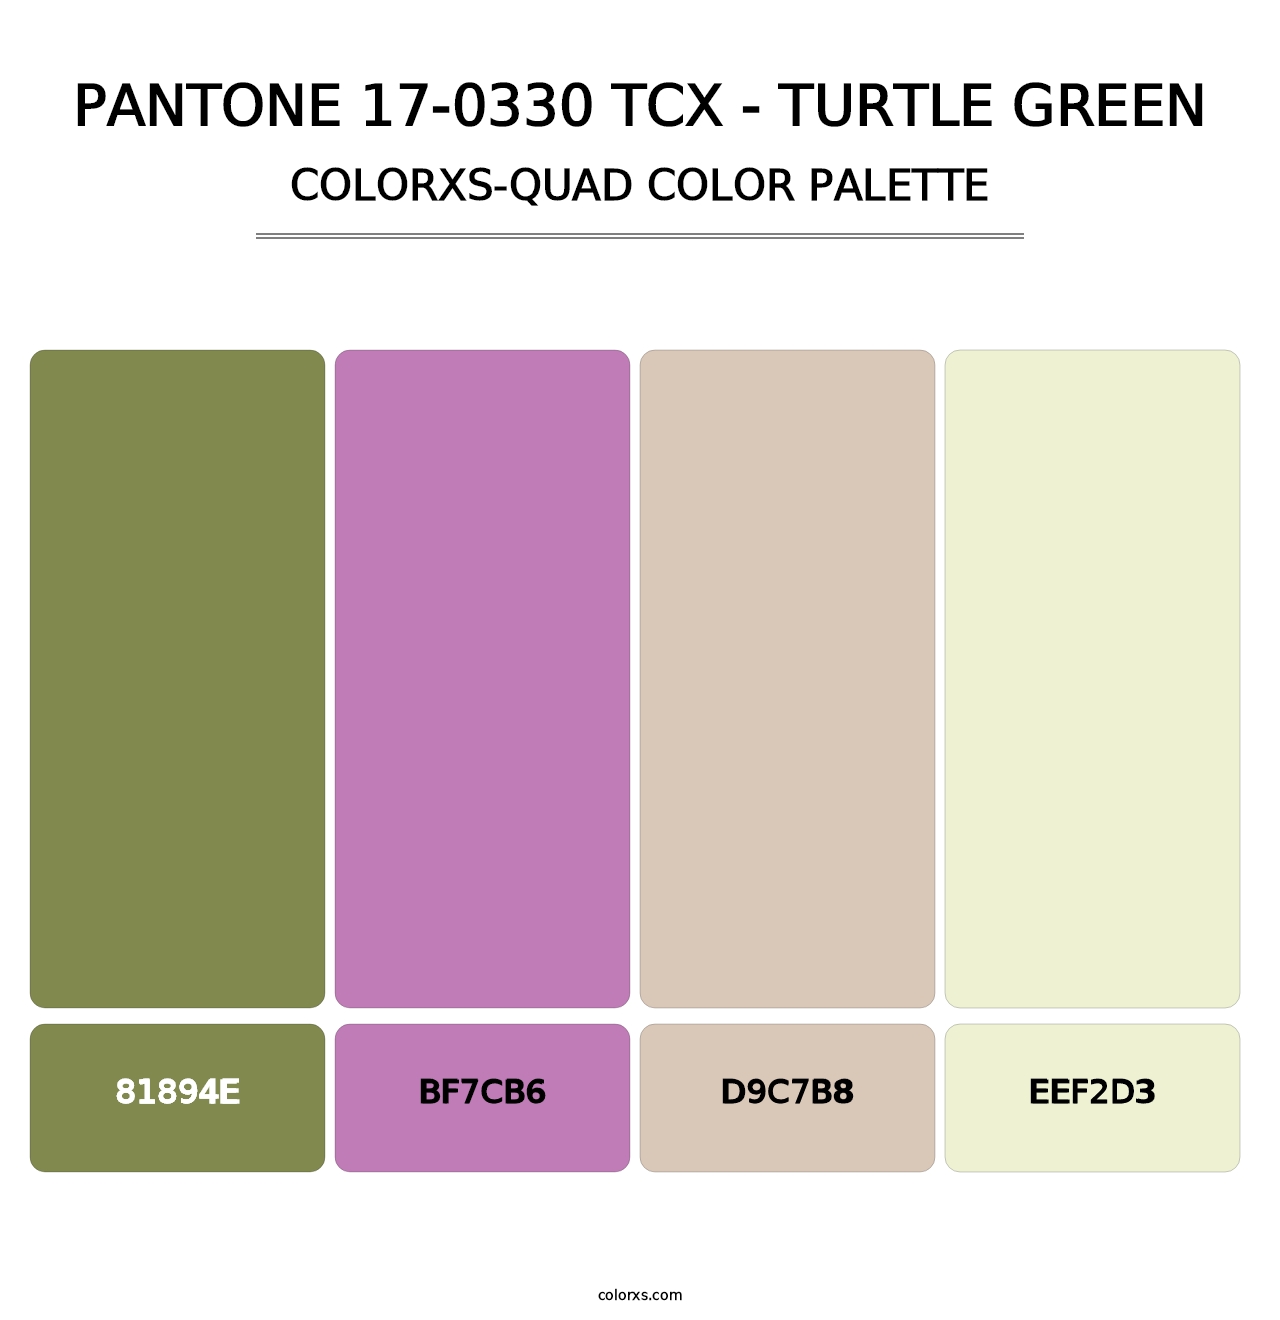 PANTONE 17-0330 TCX - Turtle Green - Colorxs Quad Palette